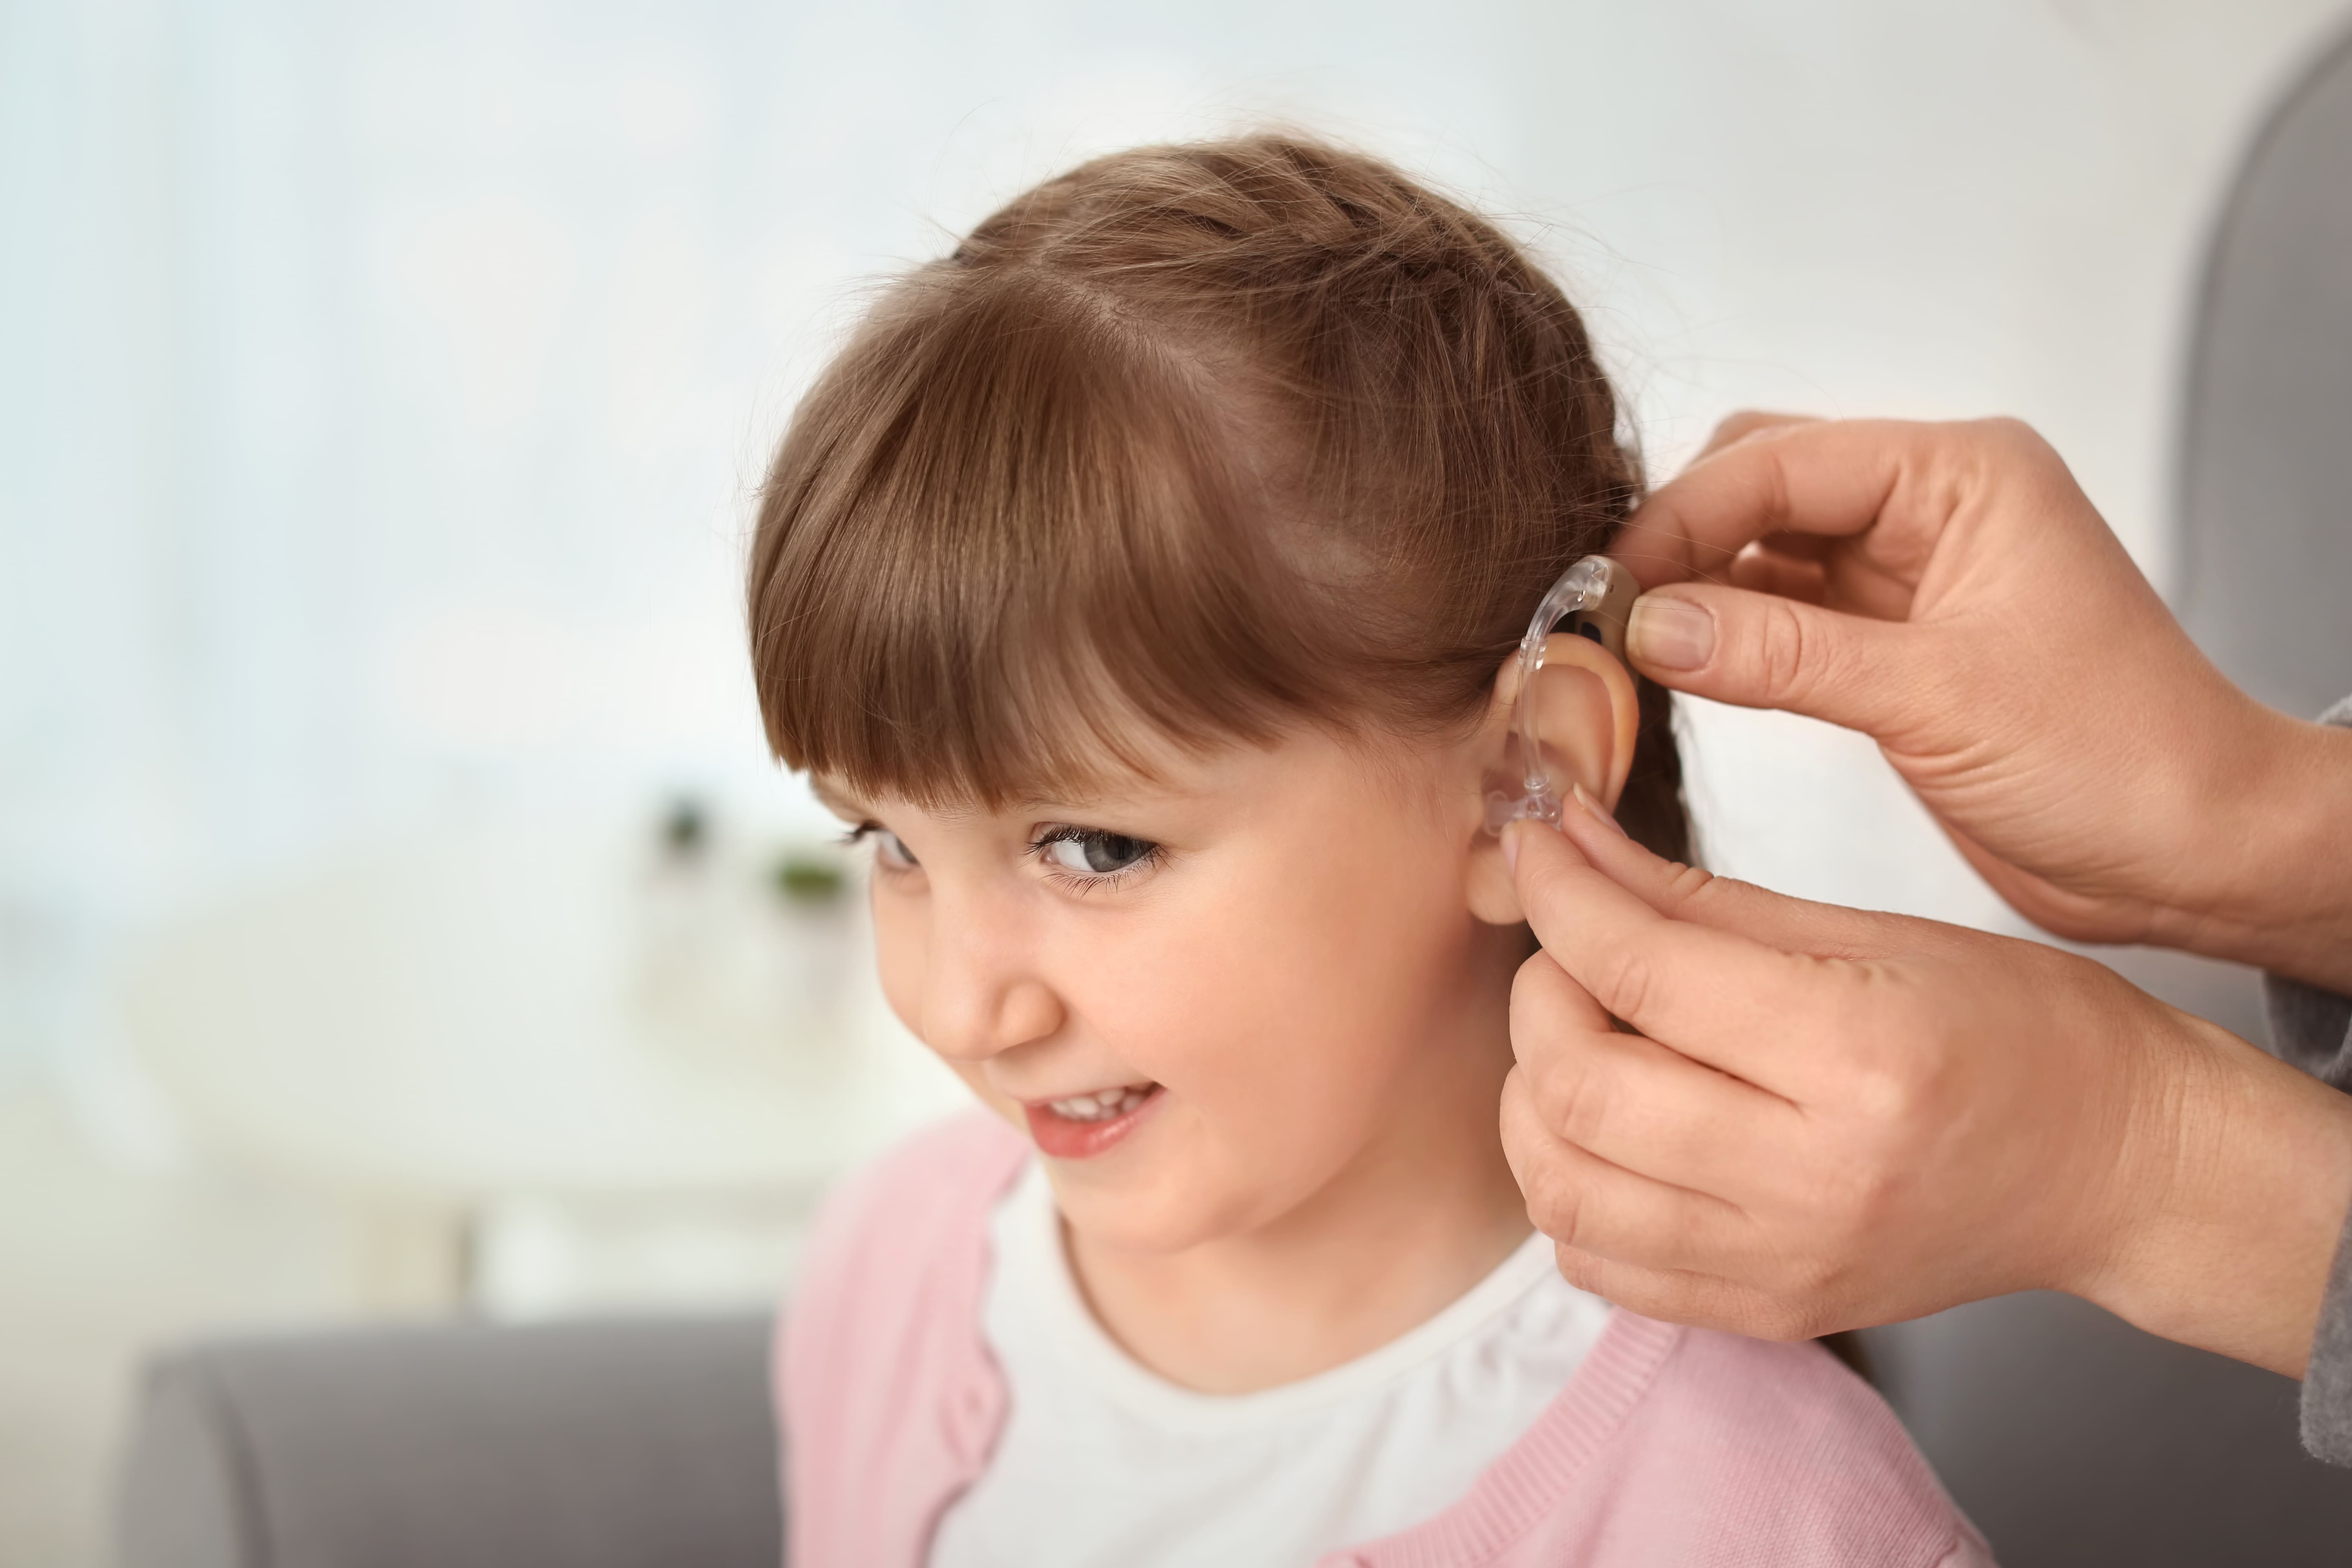 Глухие слабослышащие позднооглохшие дети. Дети с нарушением слуха.. Ребёнок сос луховым аппаратом. Слуховой аппарат для детей. Девочка со слуховым аппаратом.